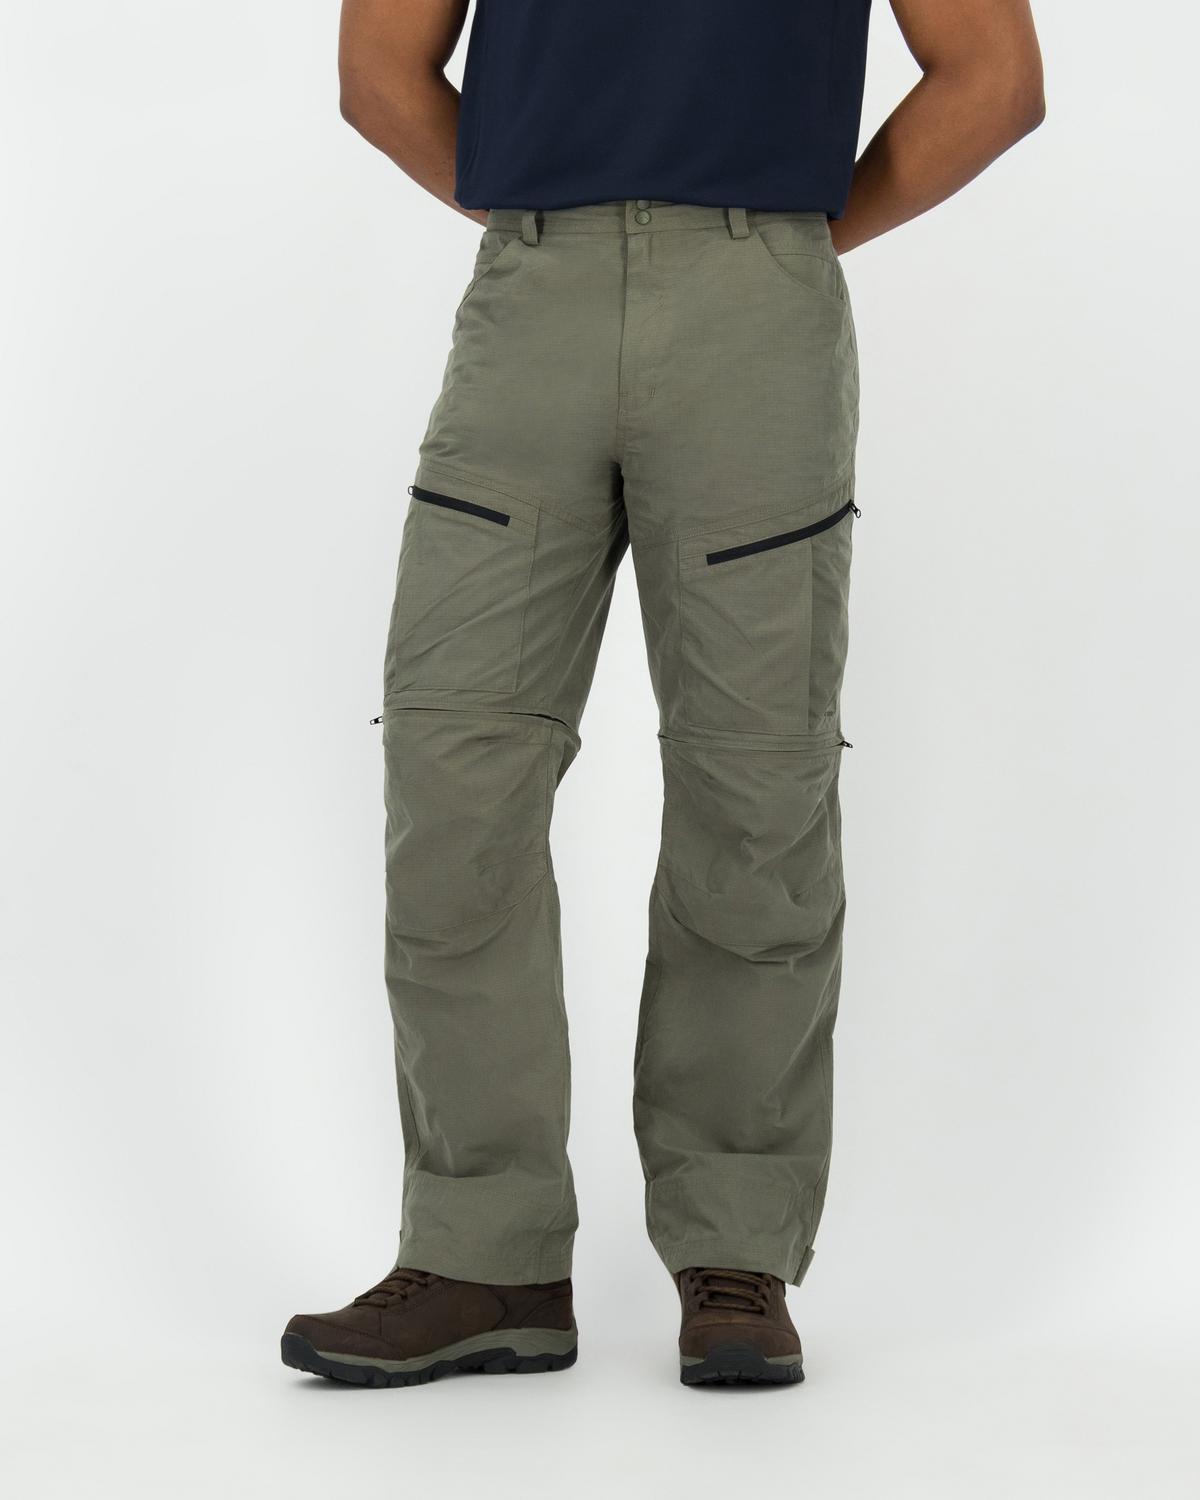 K-Way Men’s Hiker Zip-off Pants  -  Olive